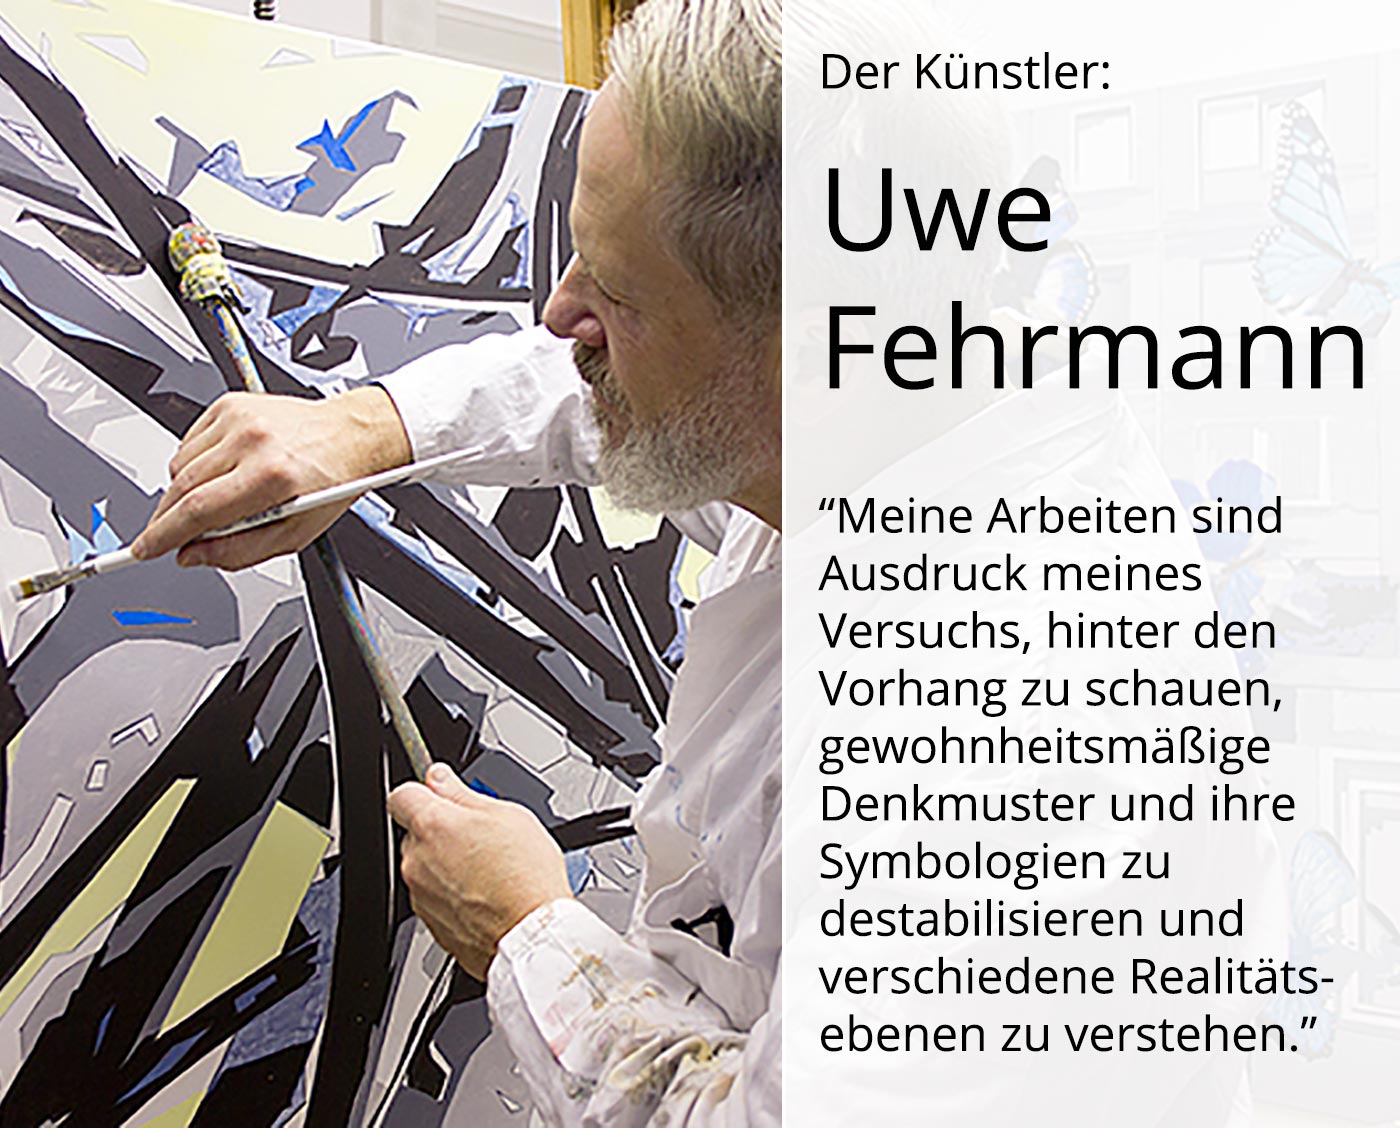 Zeitgenössische Malerei von Uwe Fehrmann: "Morgentau" (A)